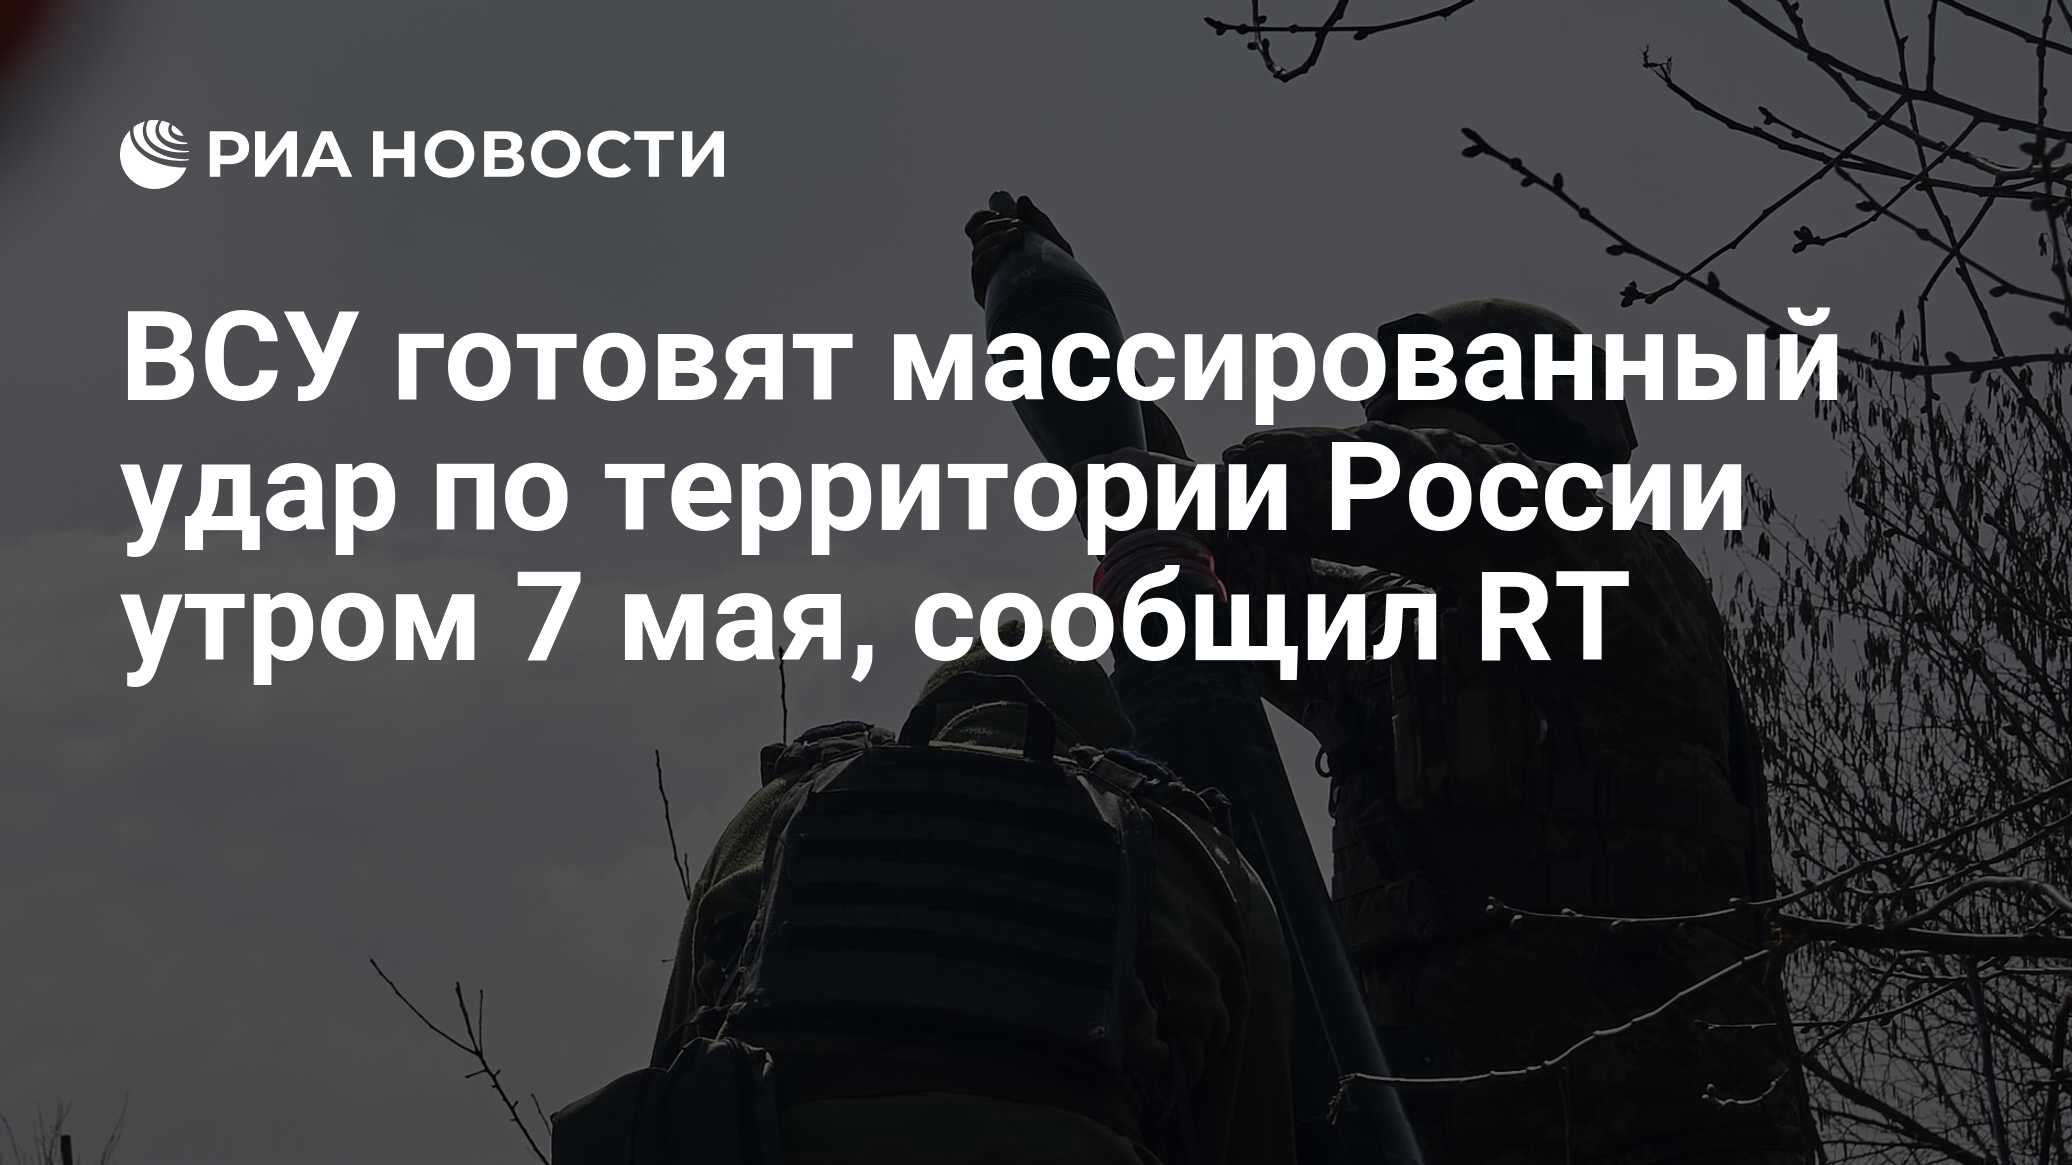 ВСУ готовят массированный удар по территории России утром 7 мая, сообщил RT